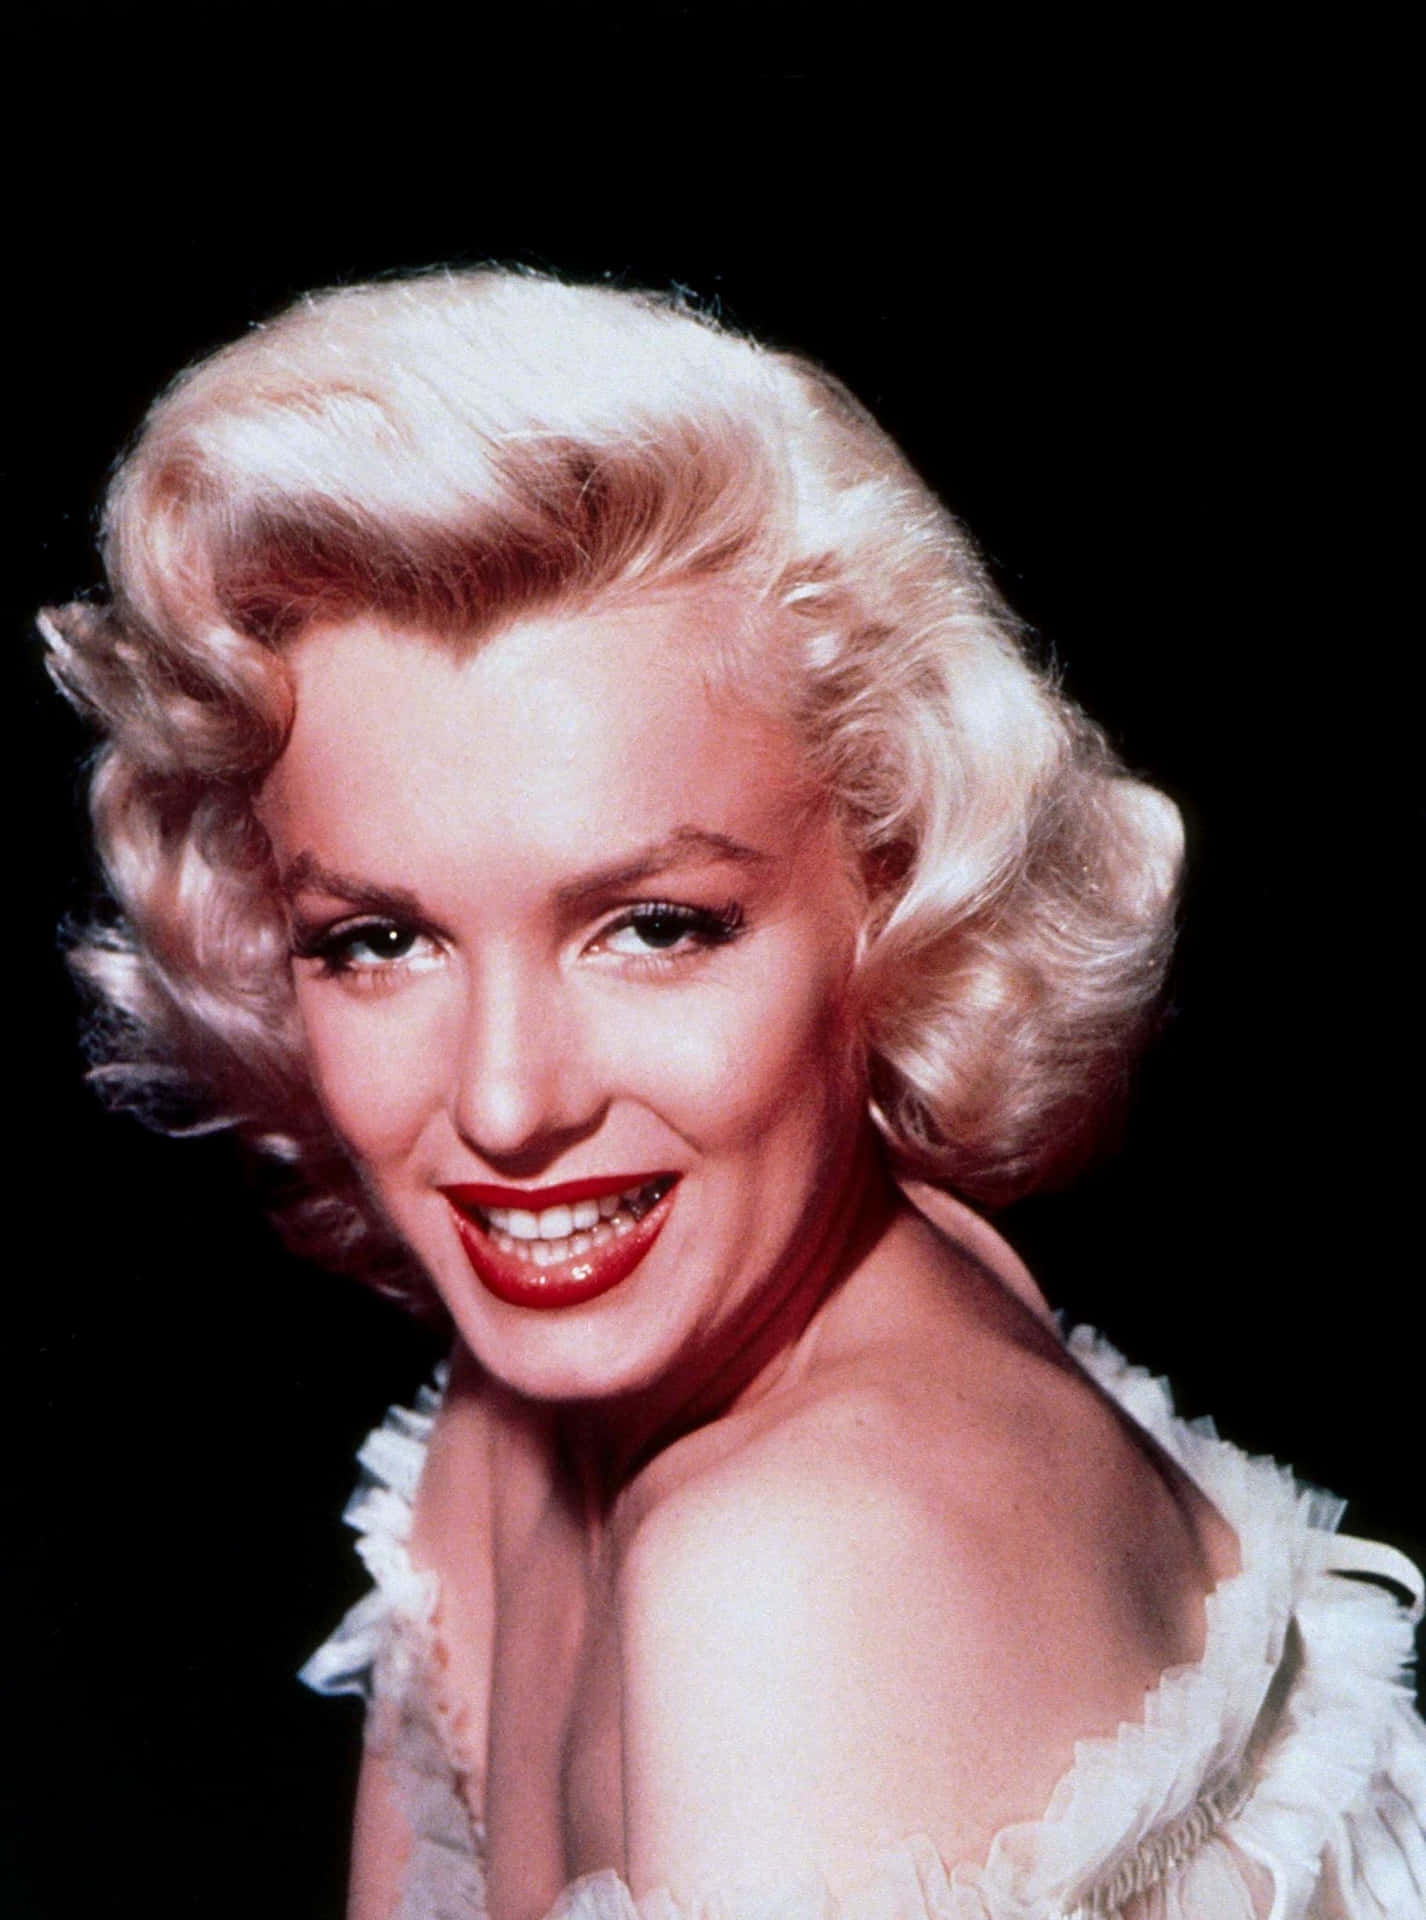 Download Marilyn Monroe Giving Her Best Vixen Pose | Wallpapers.com